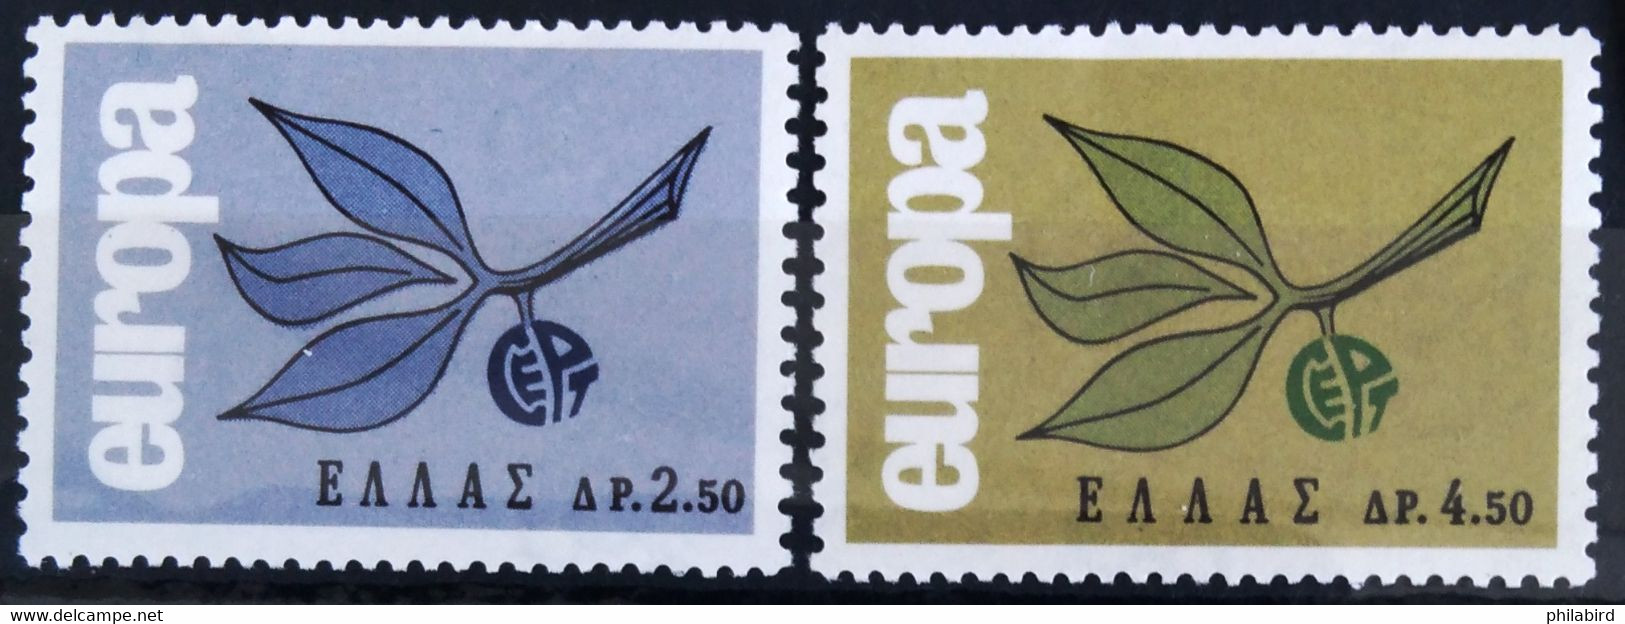 EUROPA 1965 - GRECE                    N° 868/869                    NEUF** - 1965